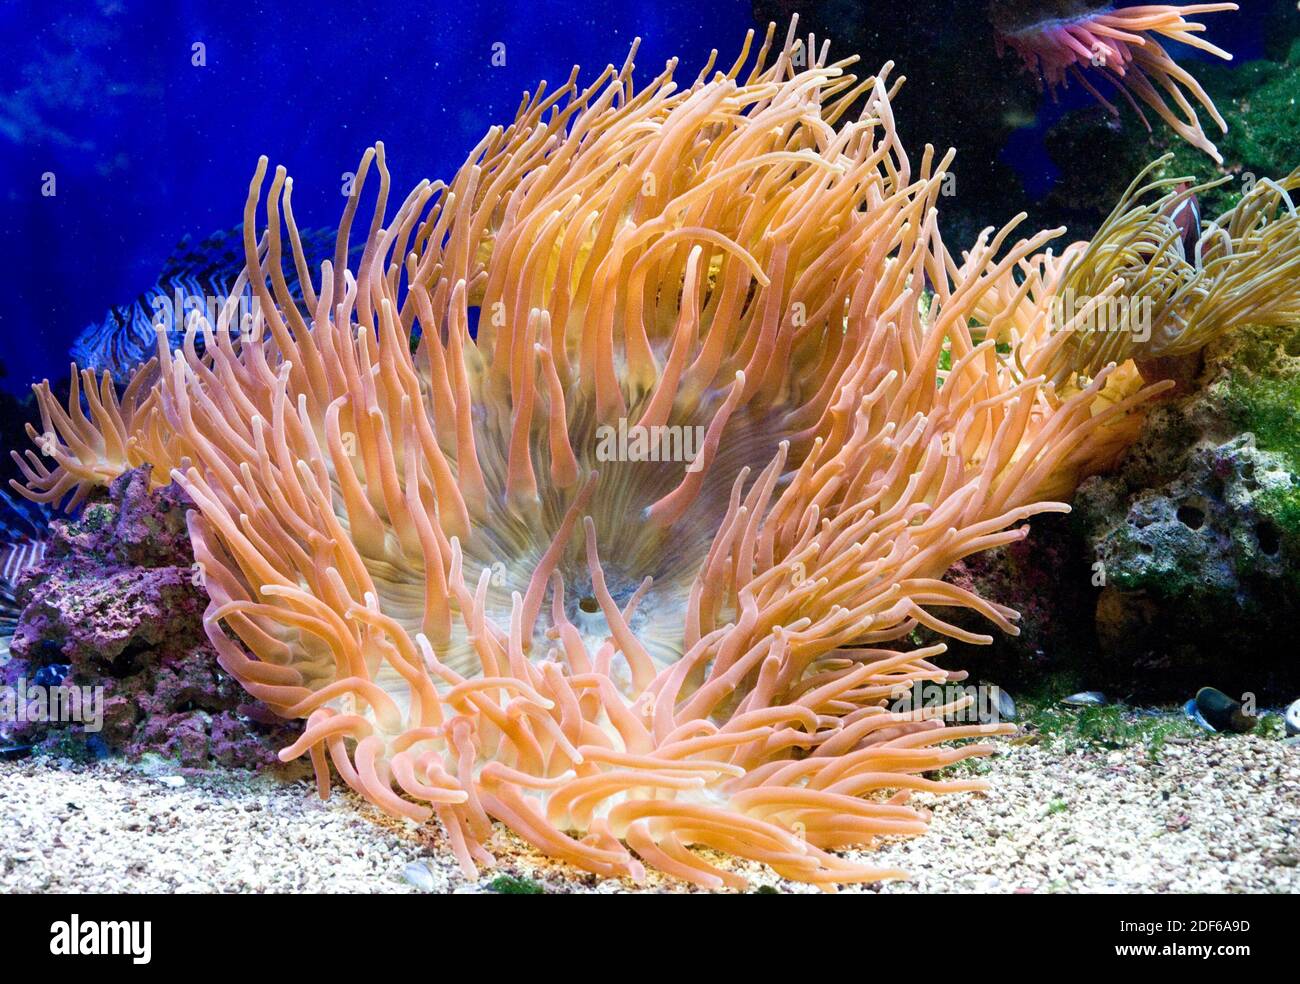 Il magnifico anemone marino (Heteractis magnifica) vive nelle acque tropicali dell'oceano Indo-Pacifico. Foto scattata in cattività. Foto Stock